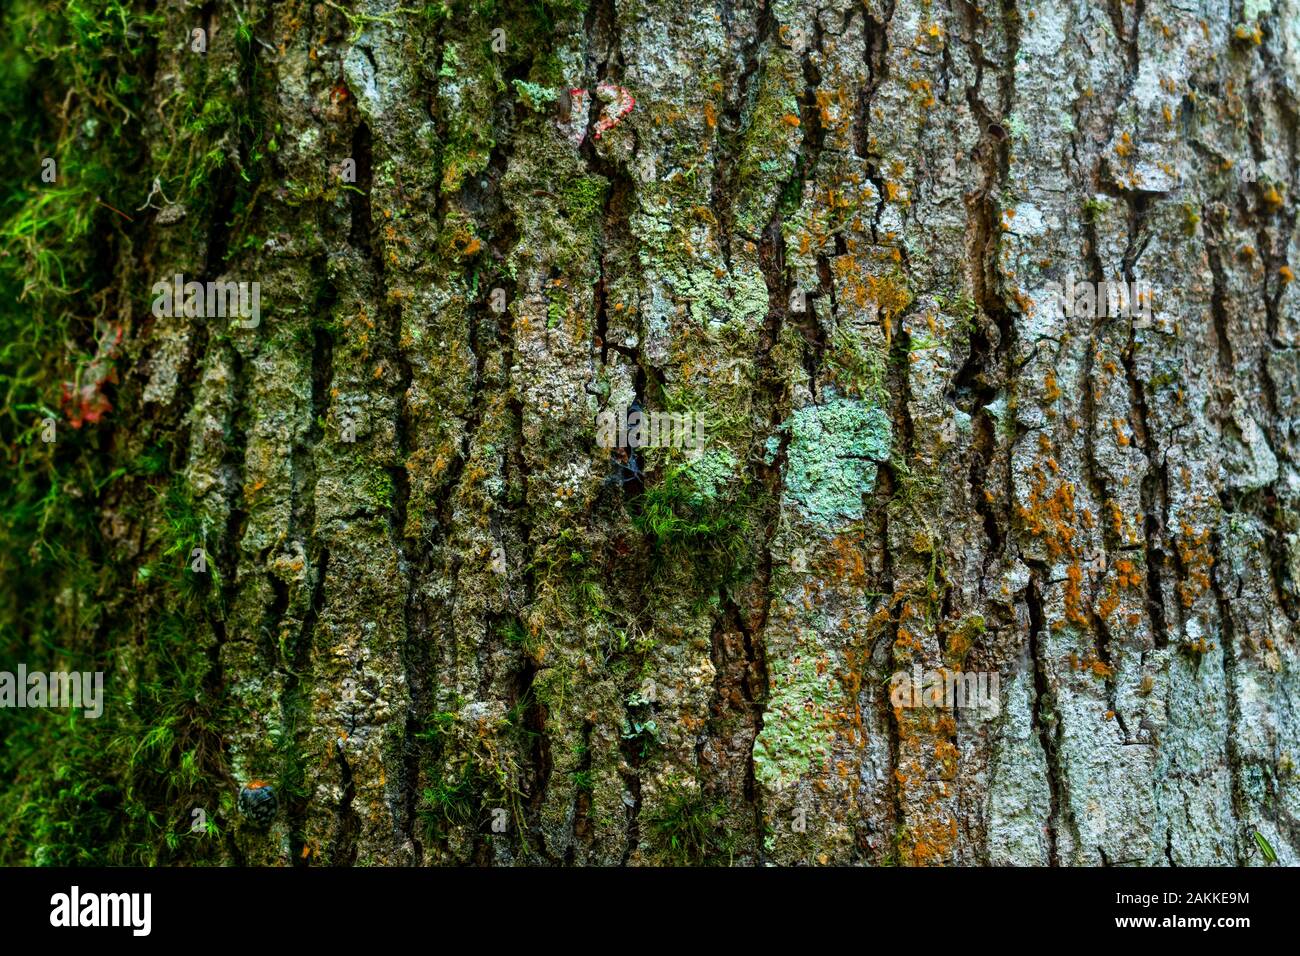 Tree bark full of mold and humid vegetation Stock Photo